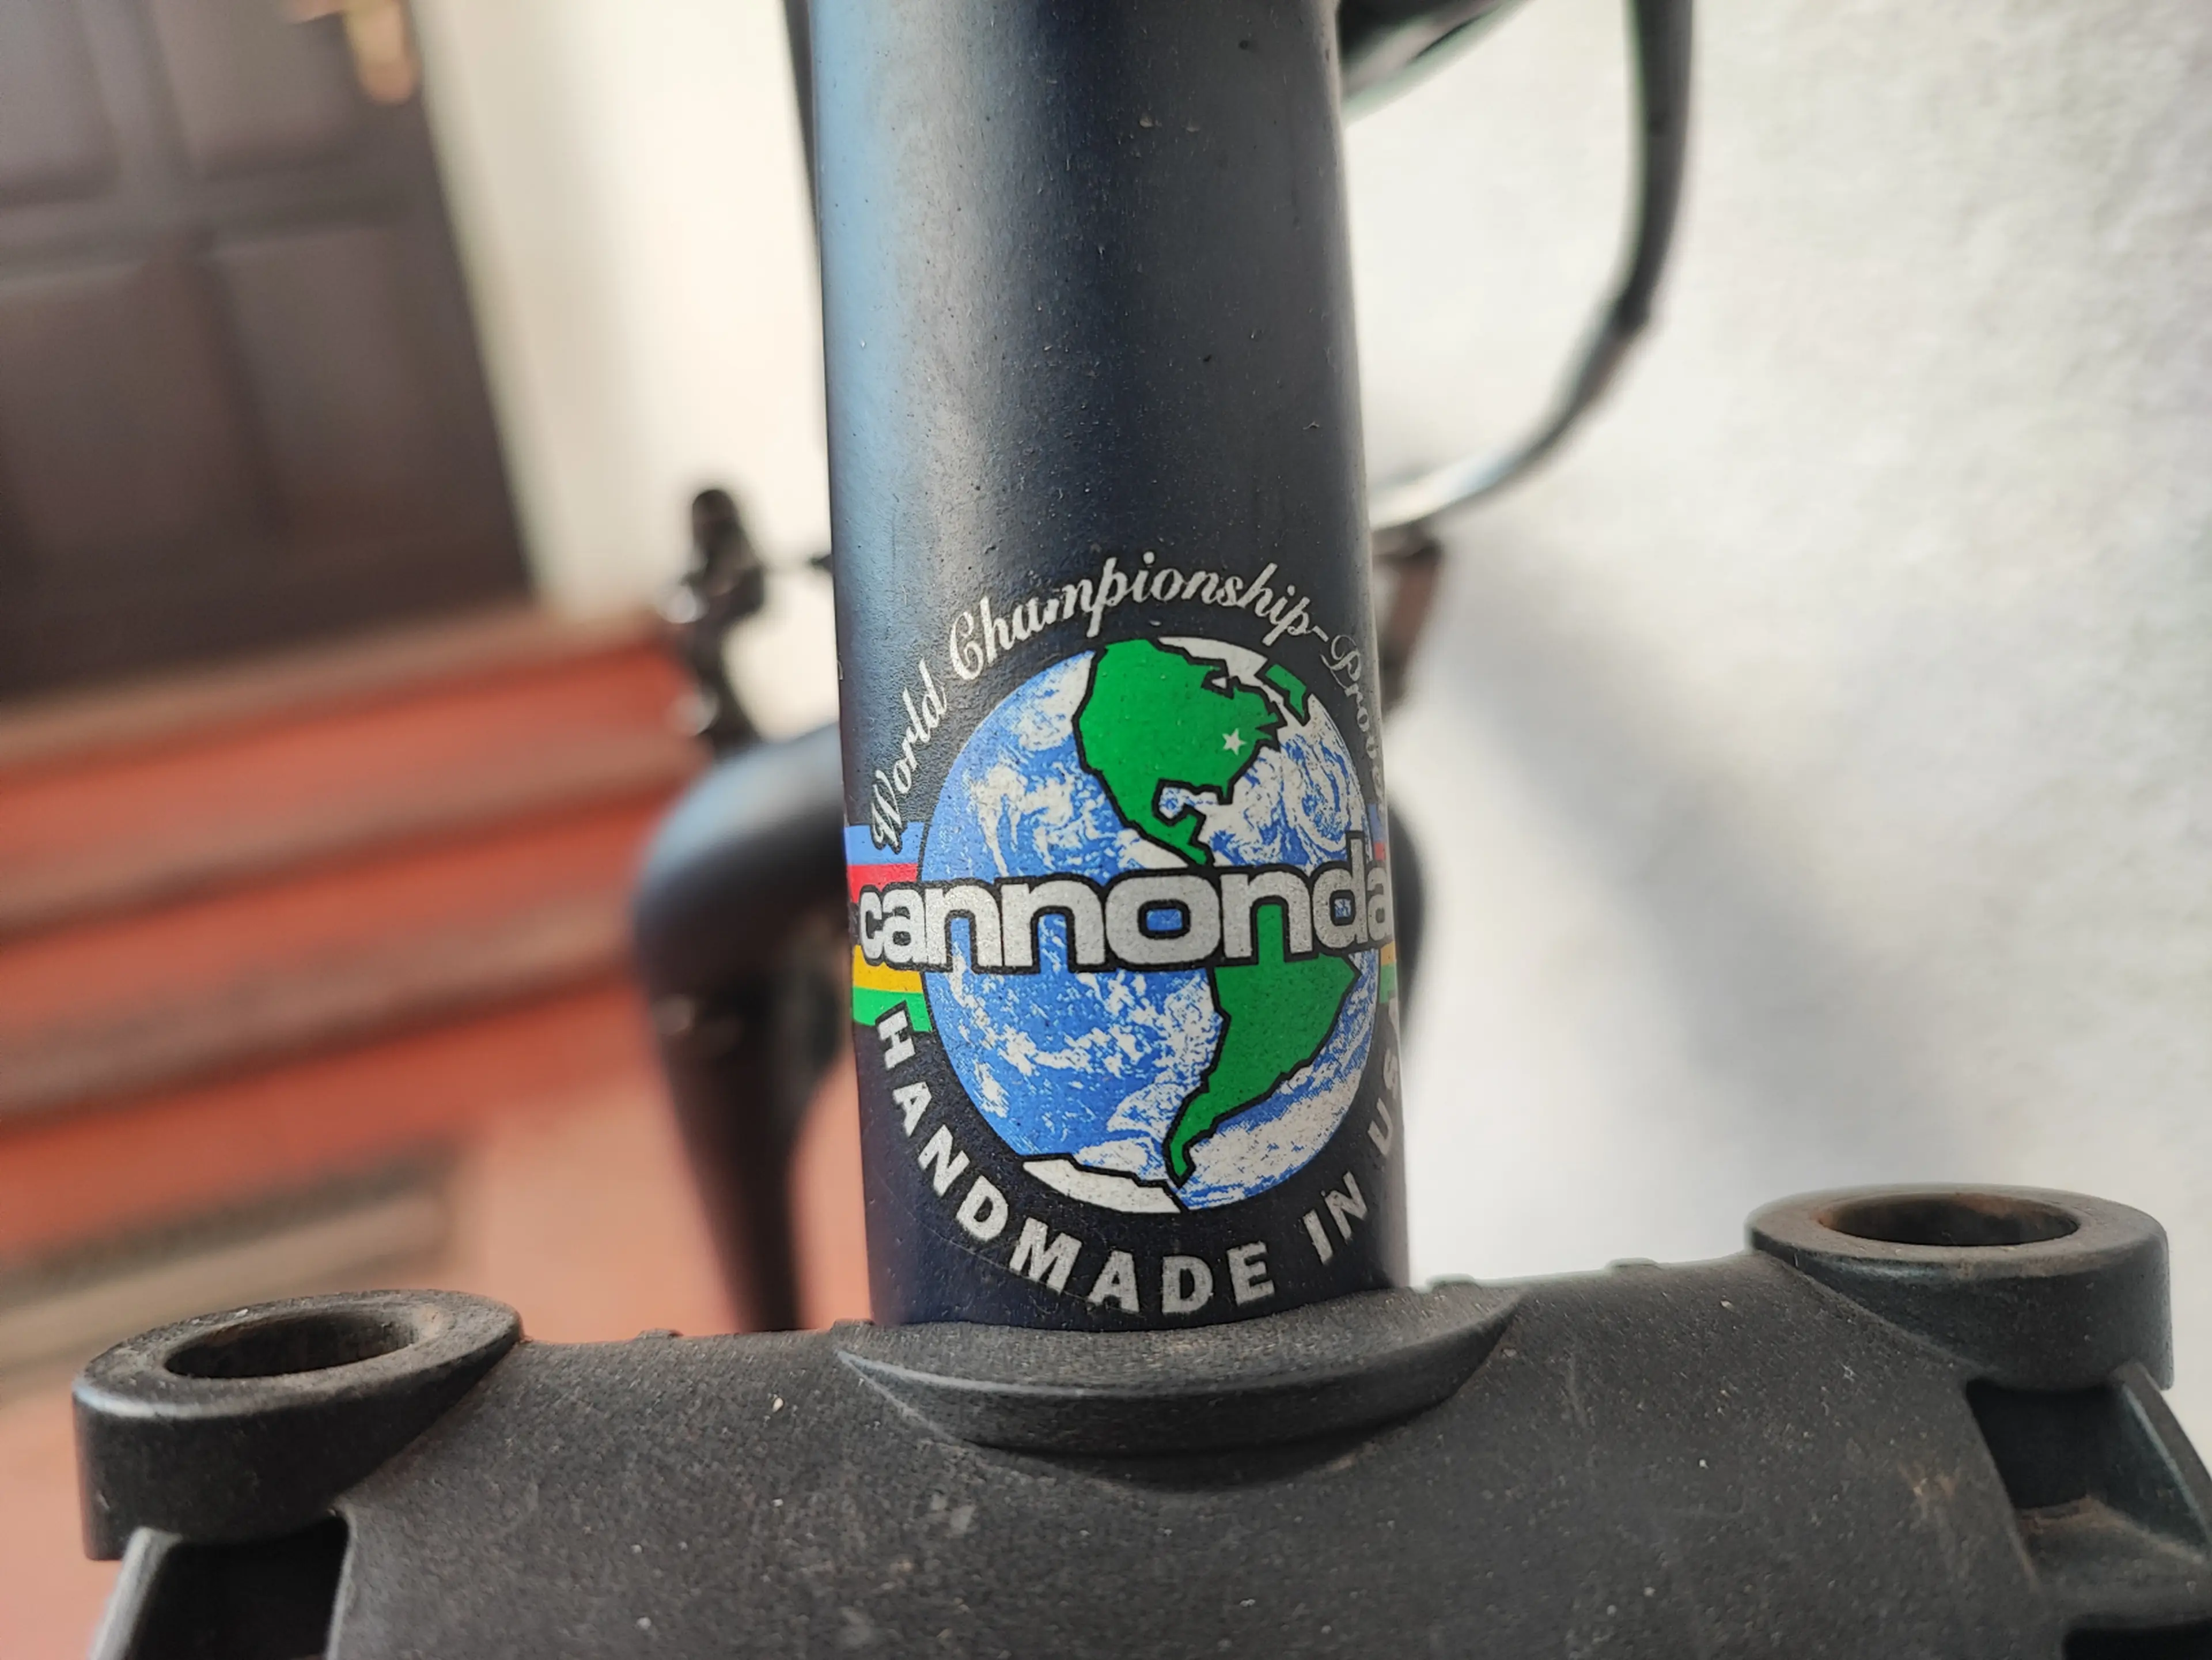 3. Bicicleta Cannondale vintage/classic Silk City